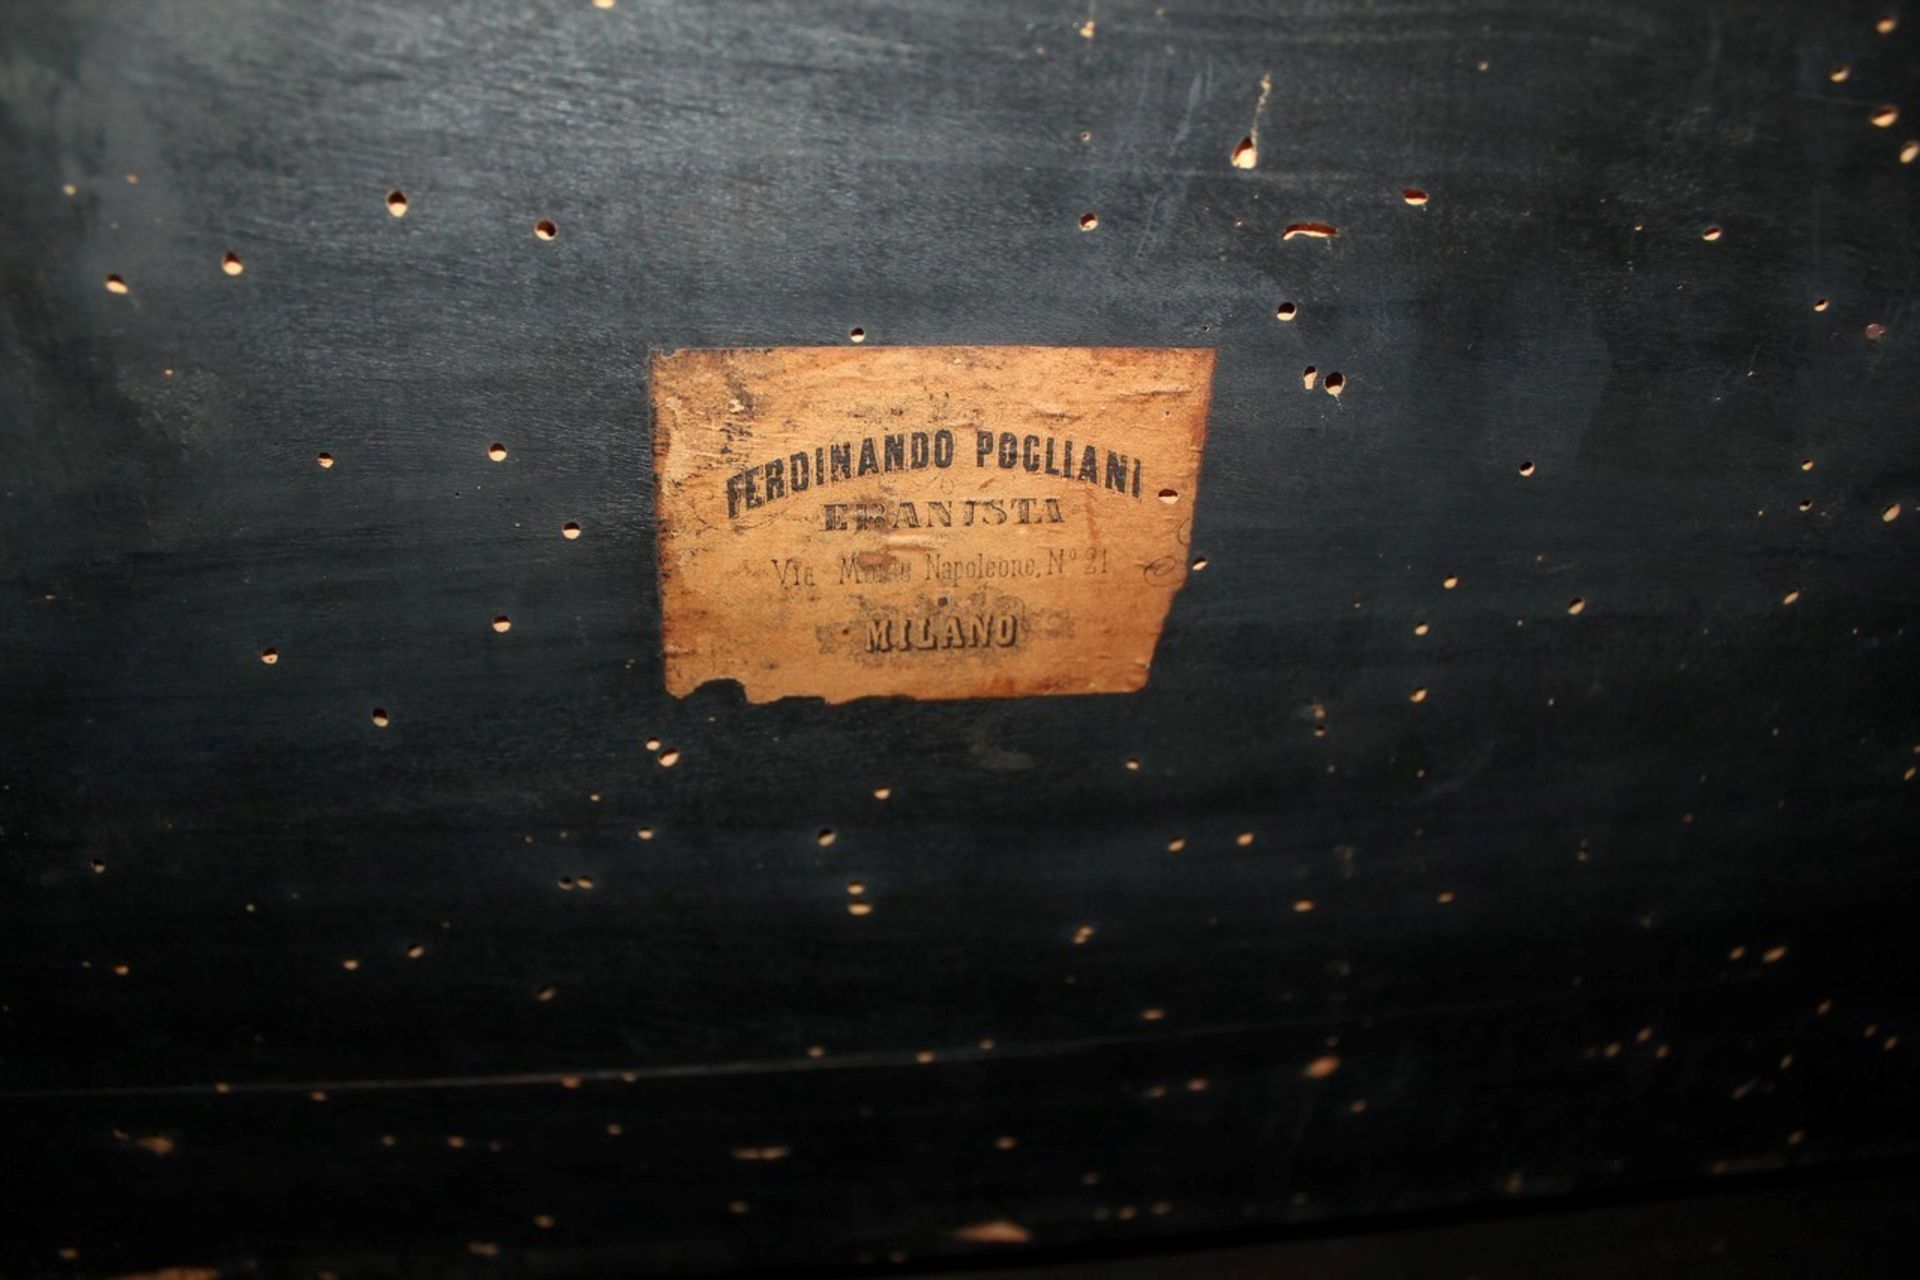 Antico scrittoietto con alzatina riccamente intarsiato, è presente un etichetta del famoso